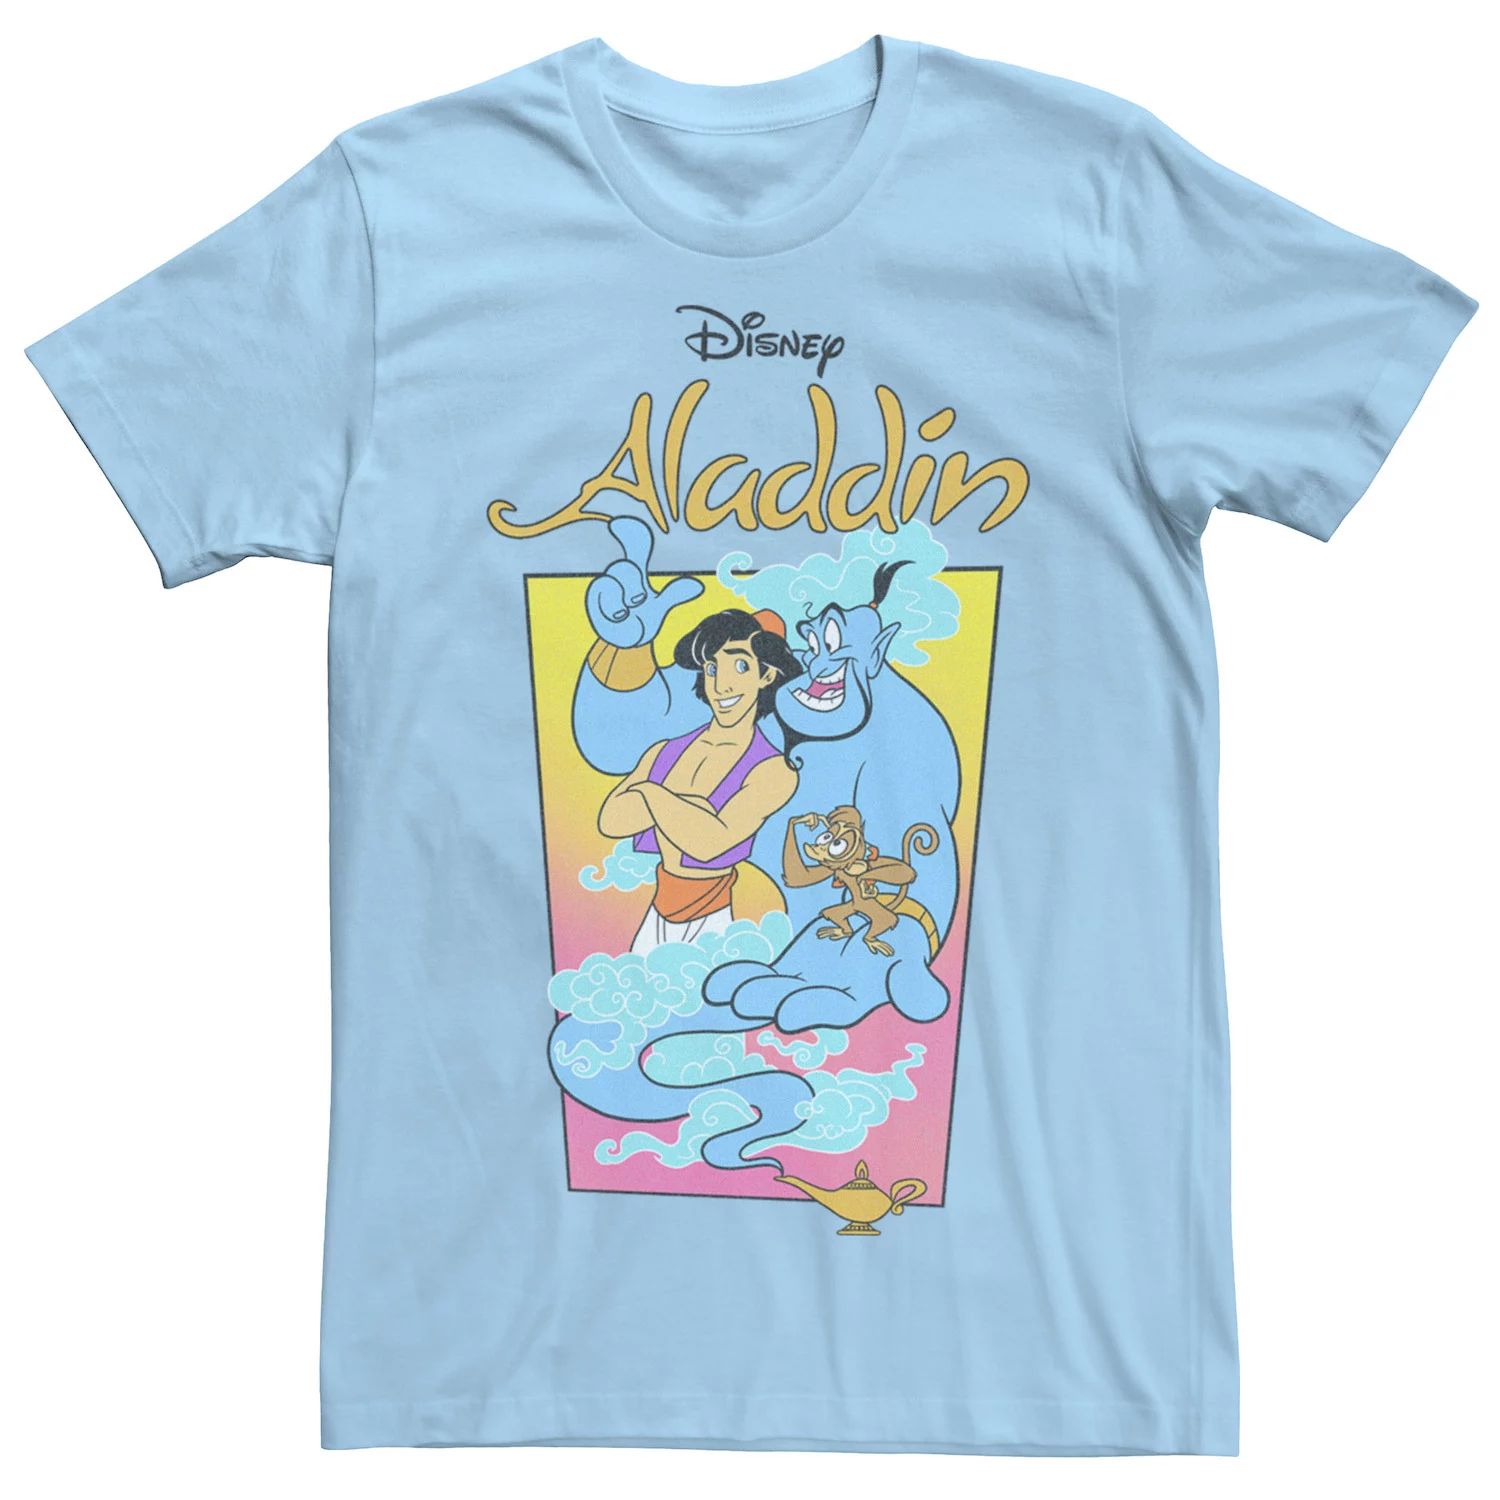 Мужская футболка с винтажным плакатом Disney Aladdin